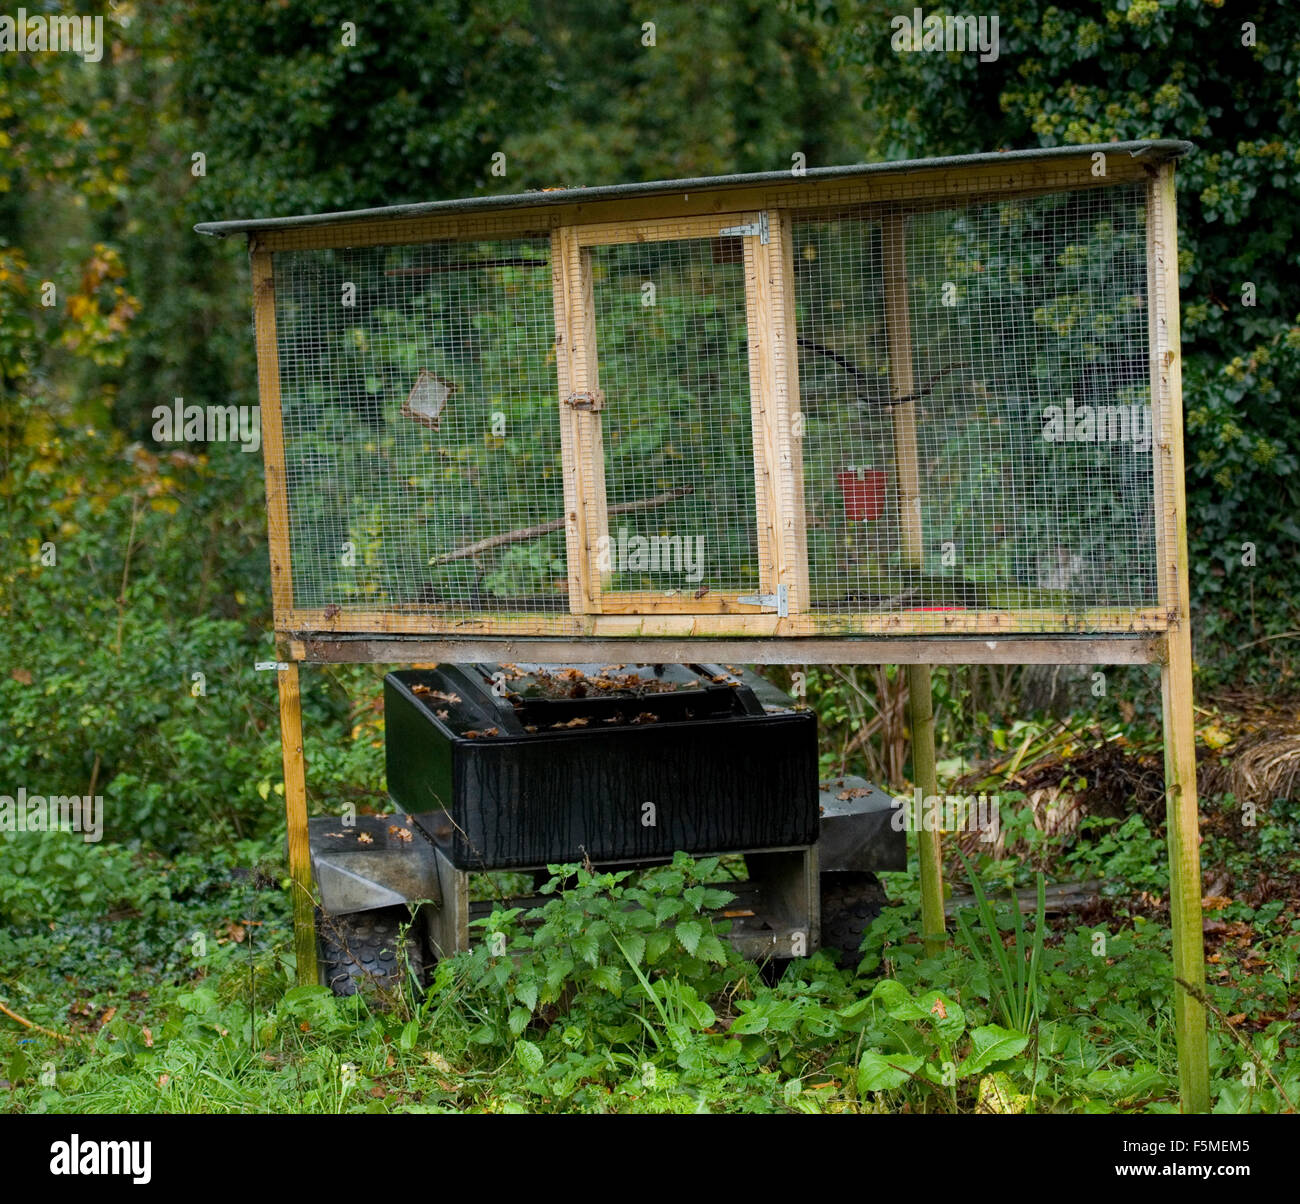 Interceptan en Lugo a un cazador furtivo de pájaros que utilizaba jaulas  trampa en árboles